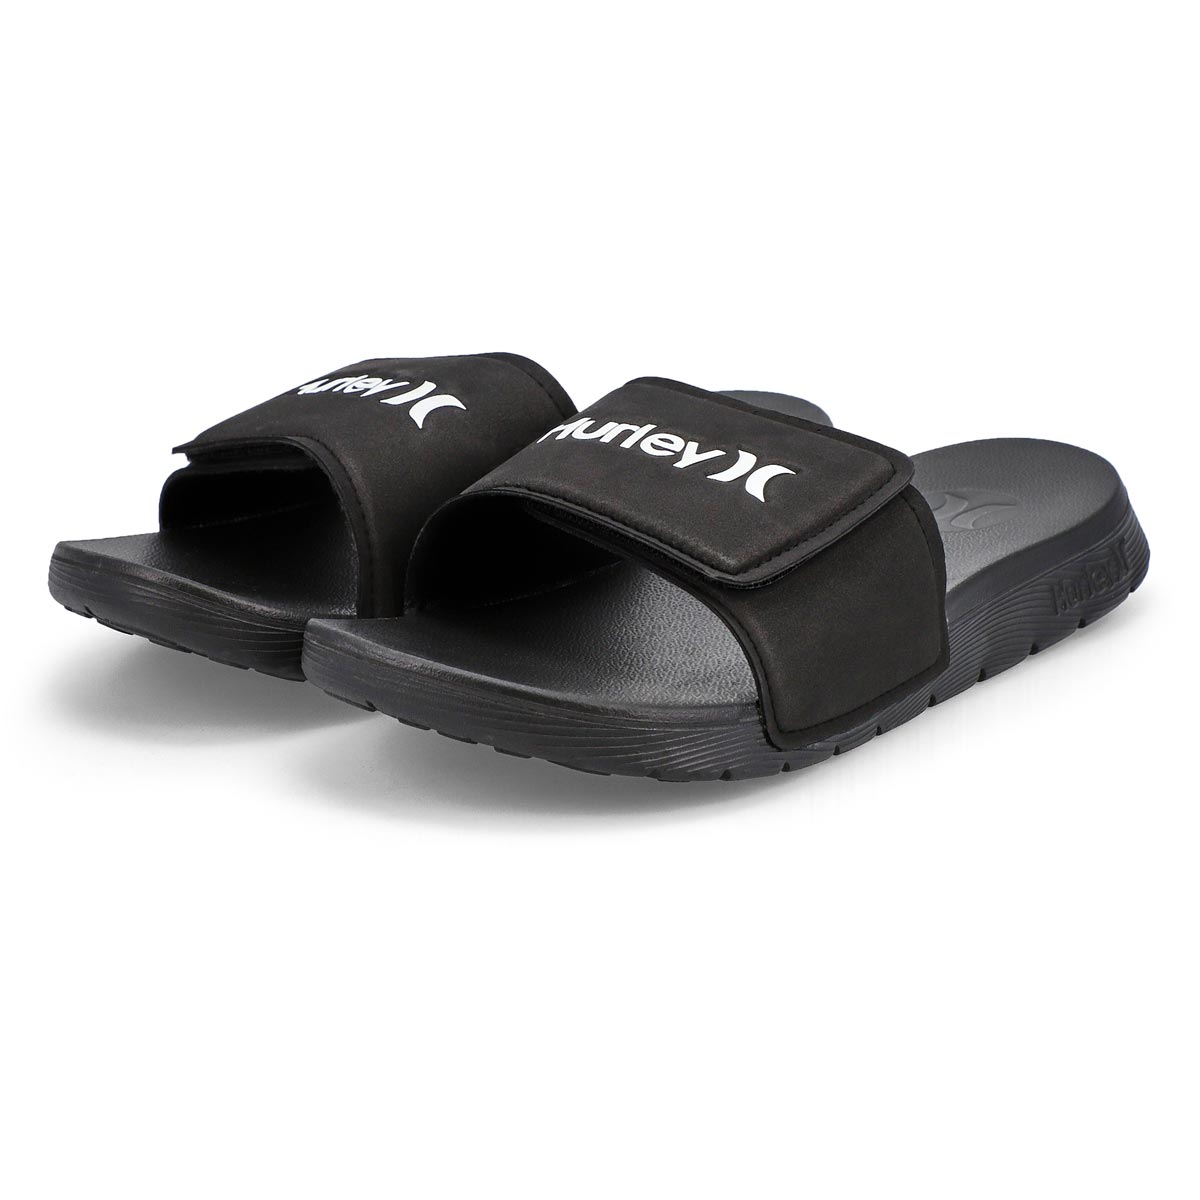 Men's Peak Tier 2 Sport Slide Sandal - Black